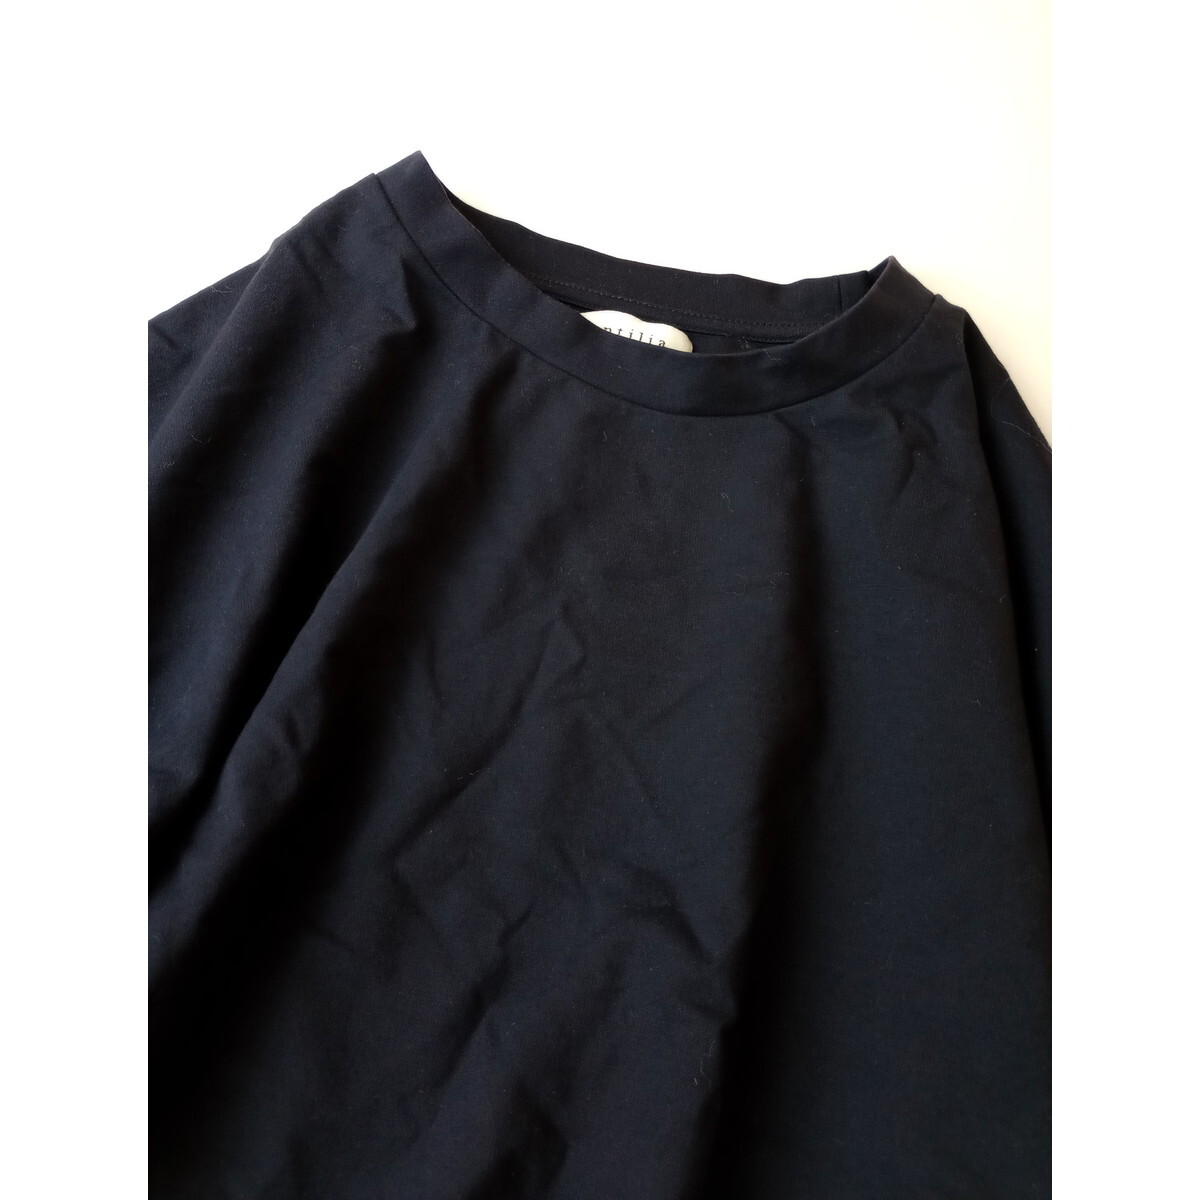 antilia アンティリア「ワードローブにわたしを新発見。」半袖 裾ゴム ブラウス プルオーバー ネイビー (54K+8393)の画像2